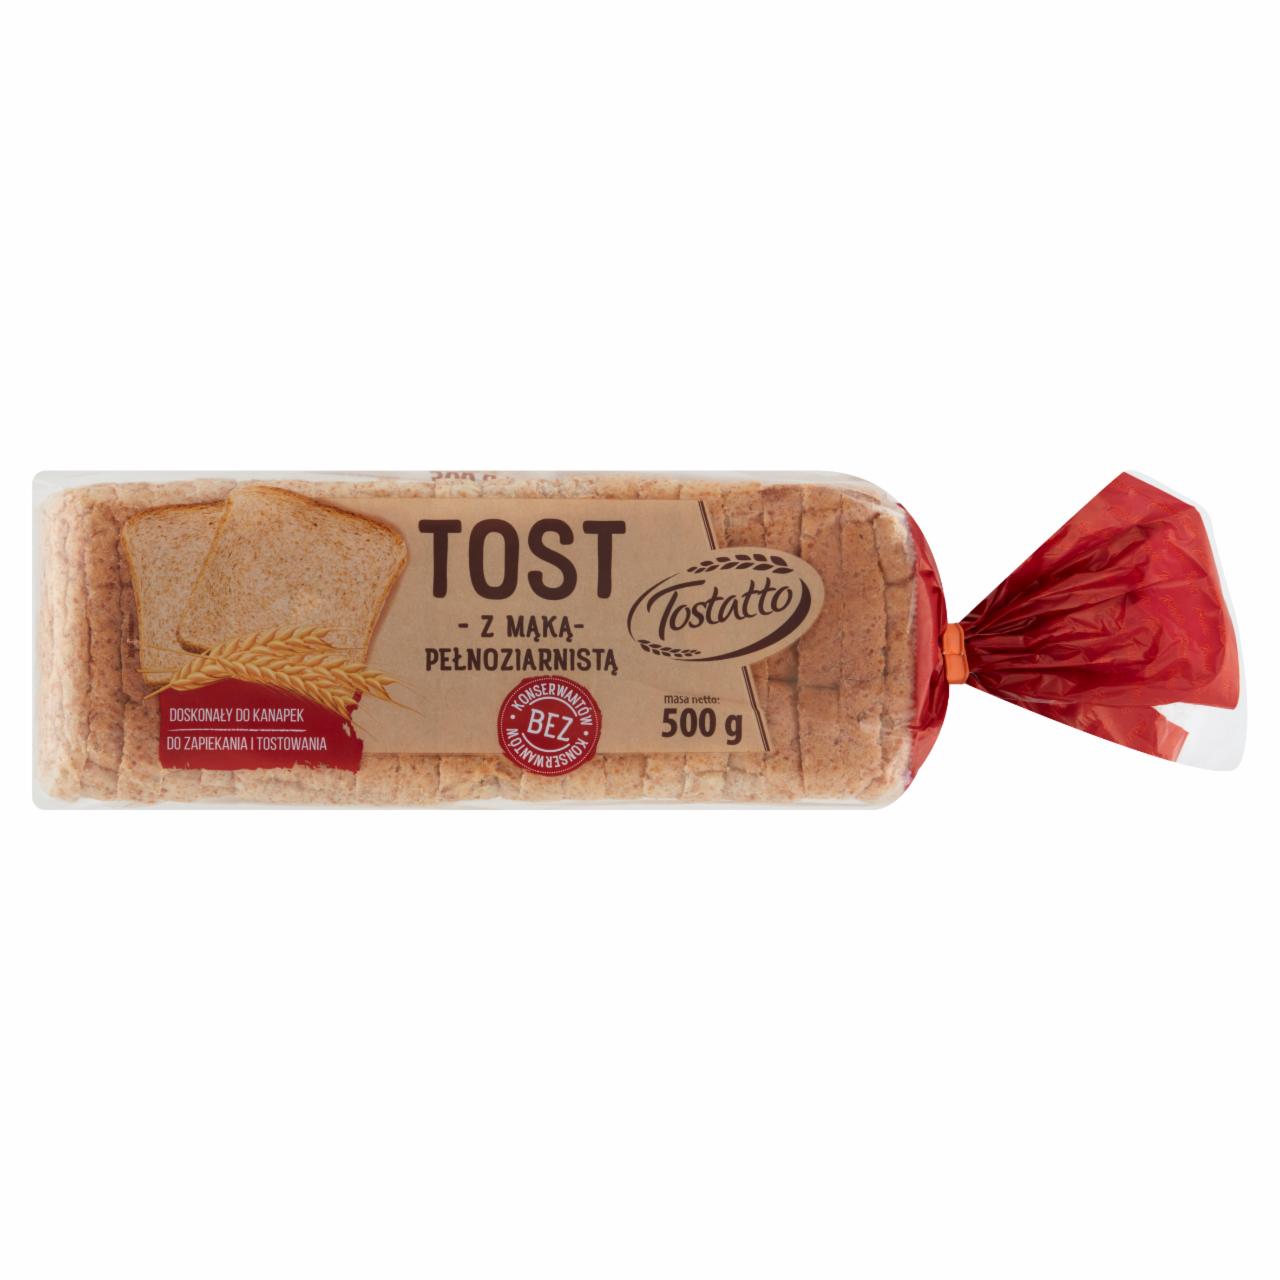 Zdjęcia - Tostatto Tost z mąką pełnoziarnistą 500 g